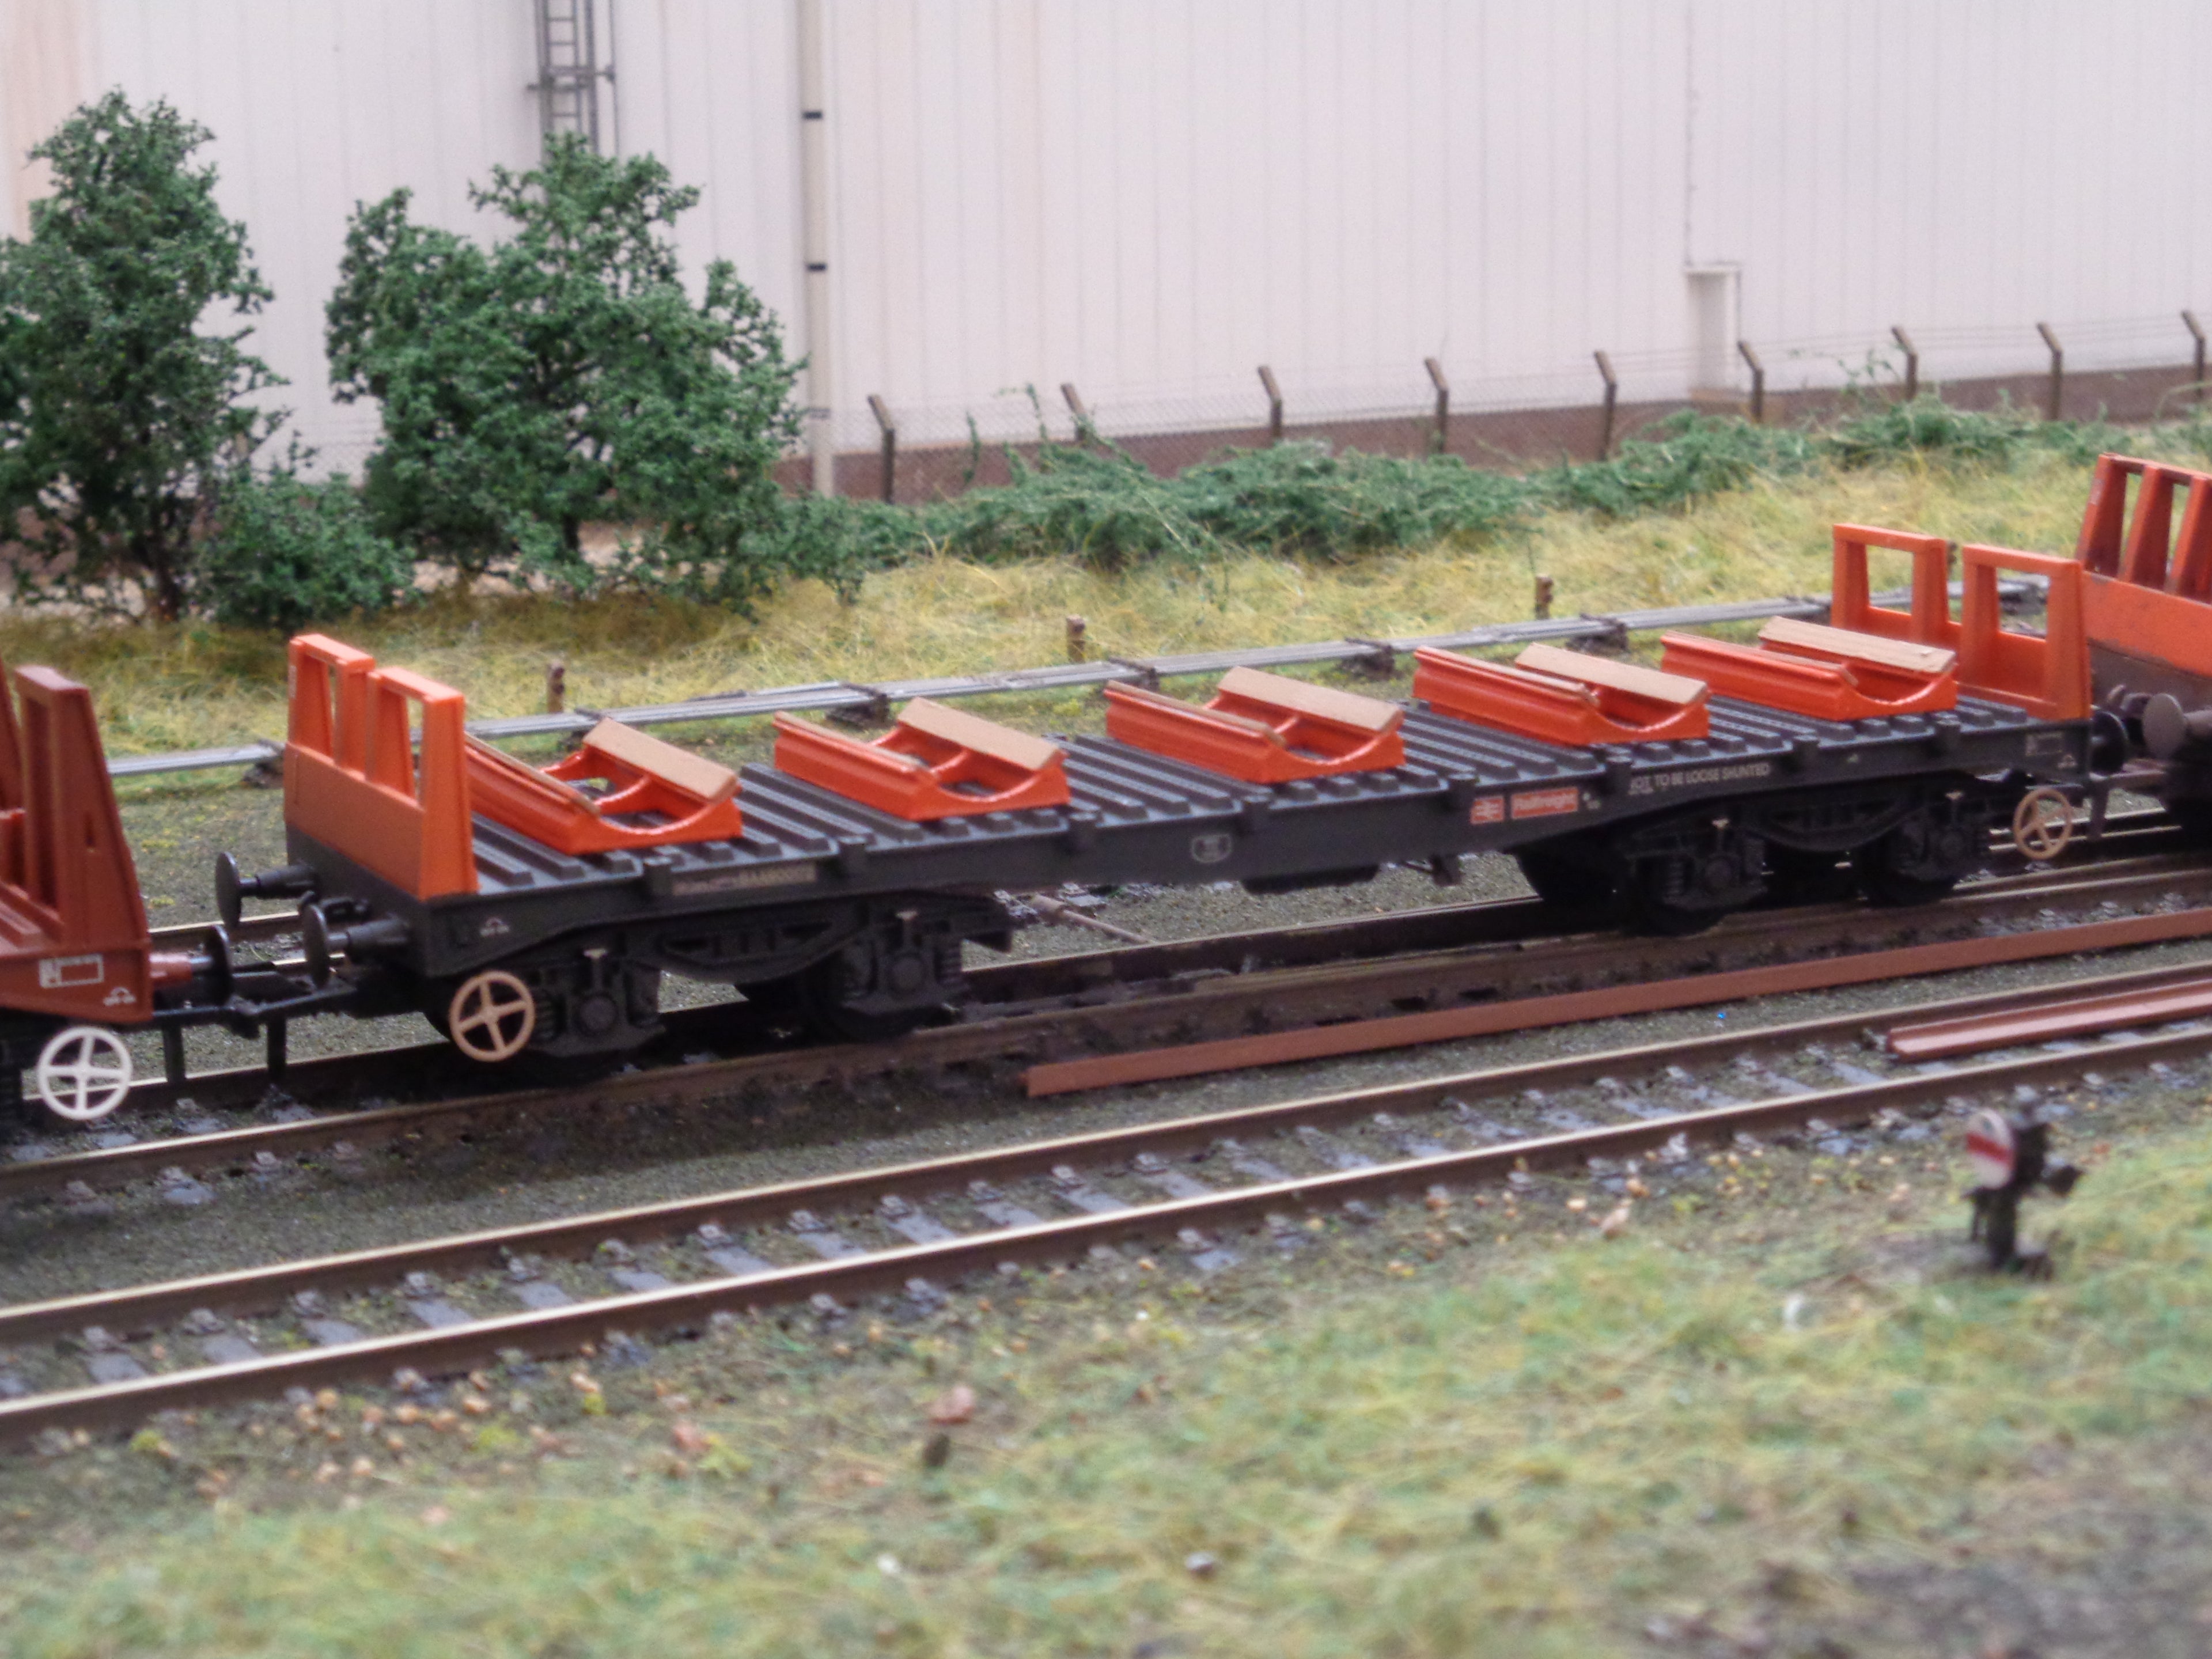 Painted OO gauge steel cradles on a wagon - Three Peaks Models